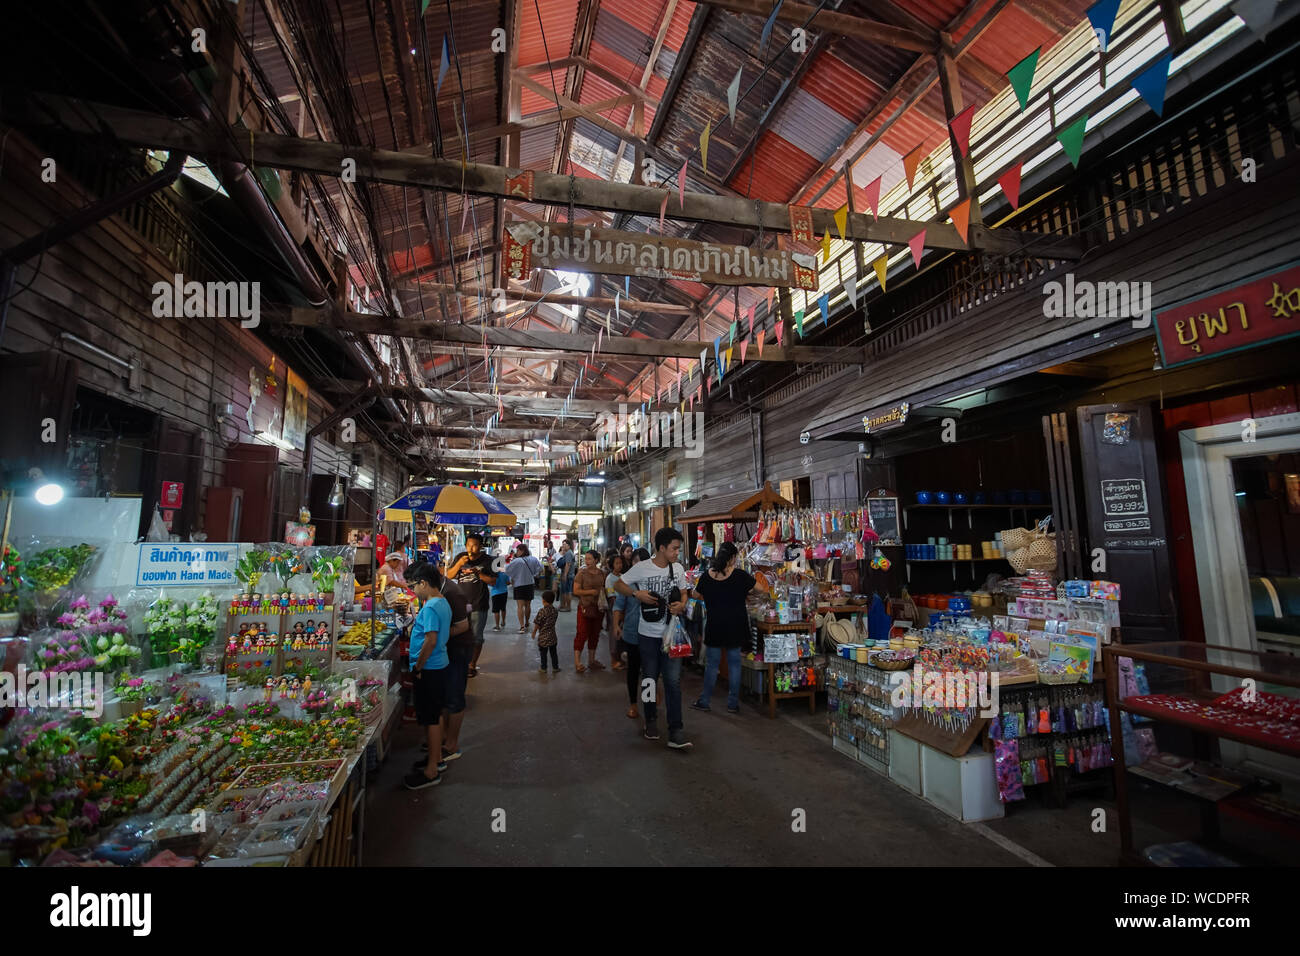 Chachoengsao, Thailand - 25. August 2019: Landschaft von Baan Mai Alter Markt in der Provinz Chachoengsao, Thailand. (Übersetzung: Baan Mai alter Markt) Stockfoto